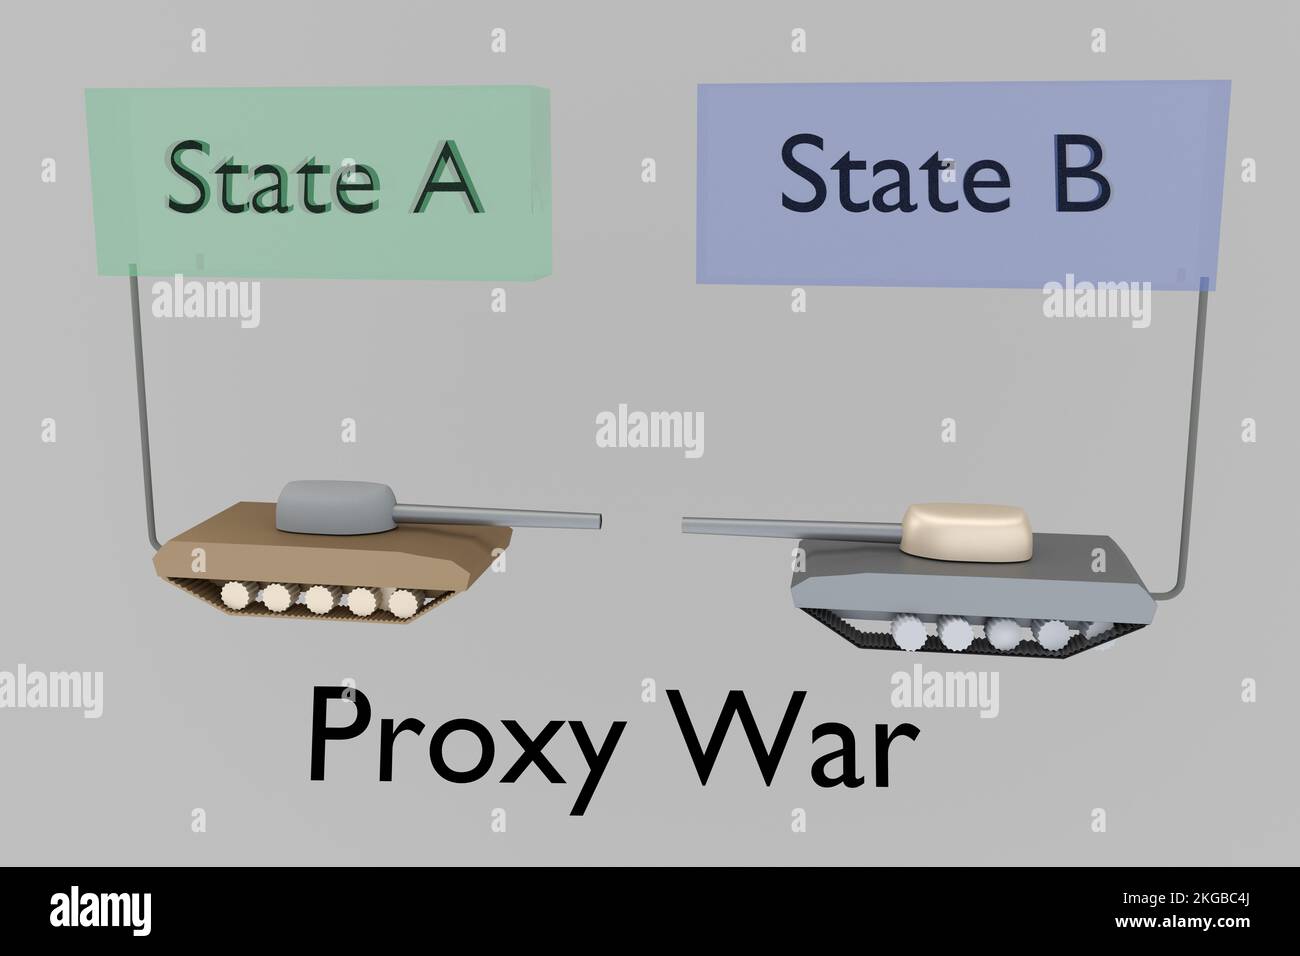 3D Darstellung von zwei Kampfpanzern mit dem Drehbuch Proxy war, das einem bewaffneten Konflikt zwischen zwei Staaten ähnelt. Stockfoto